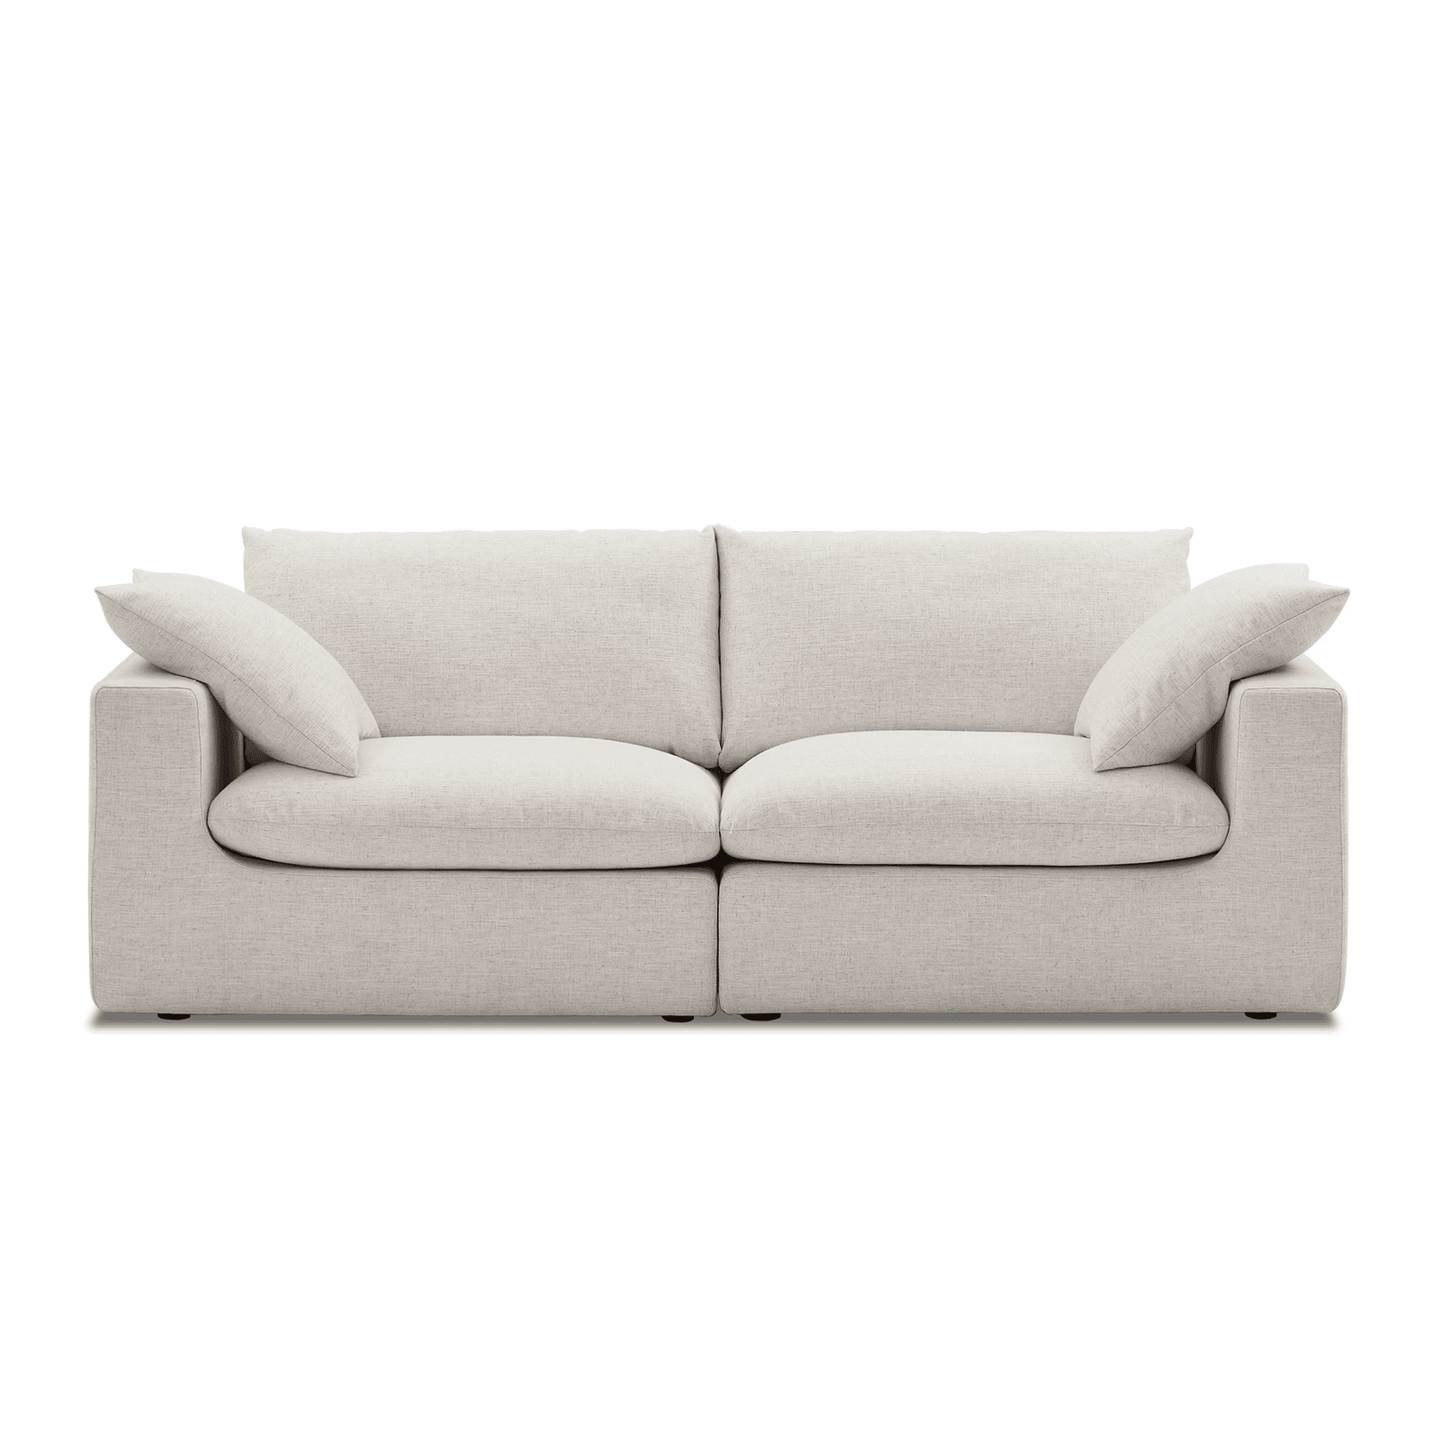 Duke Deep Seat Sofa, 2 Seater, White